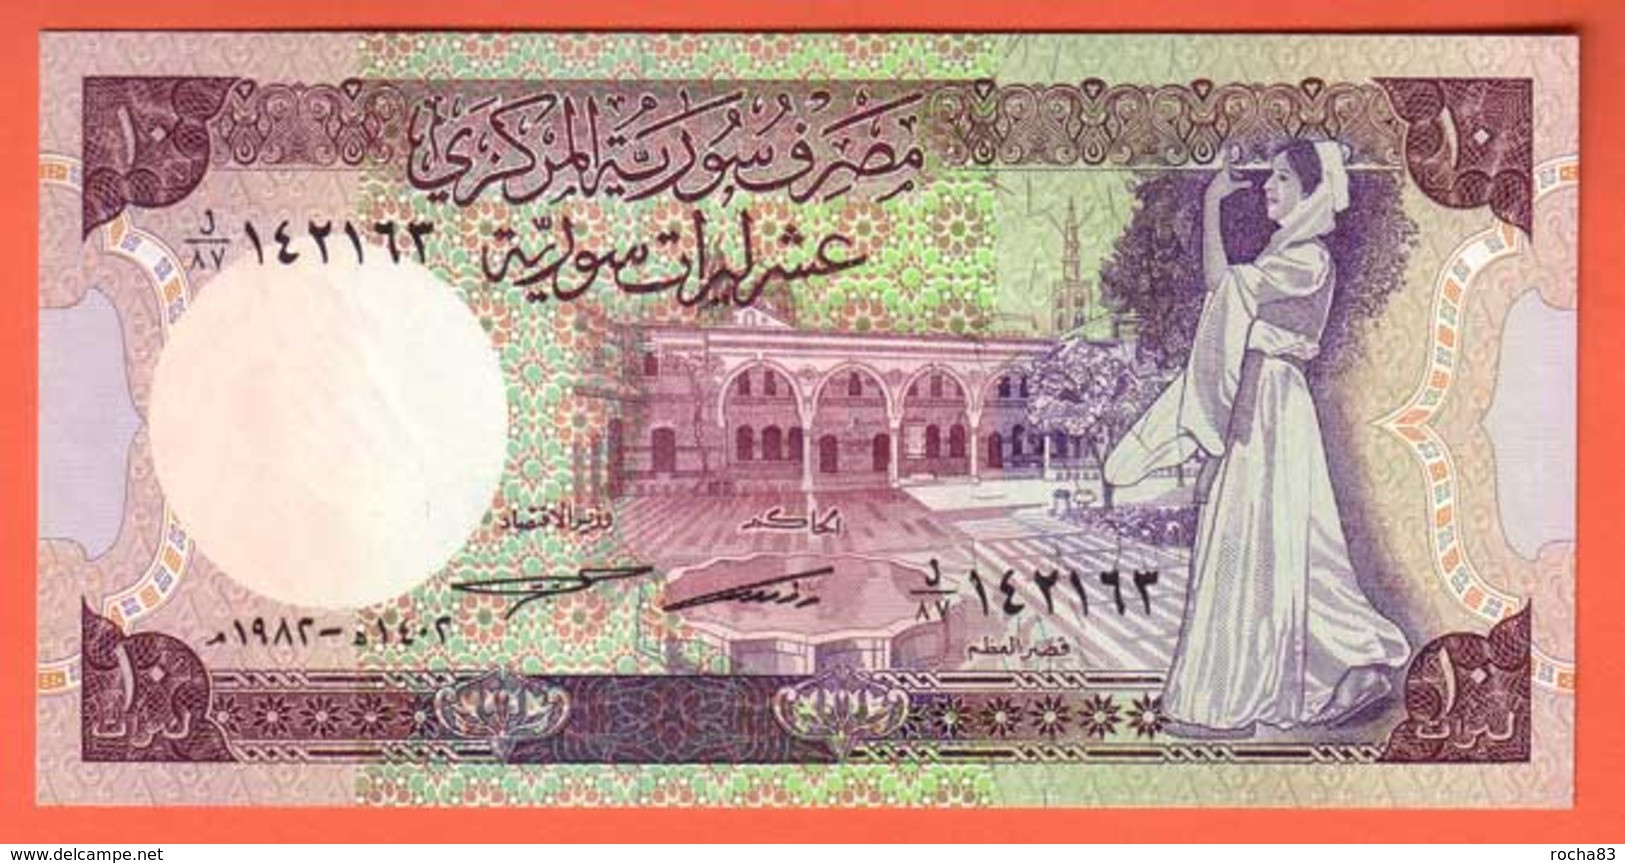 SYRIE  Billet 10 Pounds 1991  Pick 101e  NEUF - Syrien